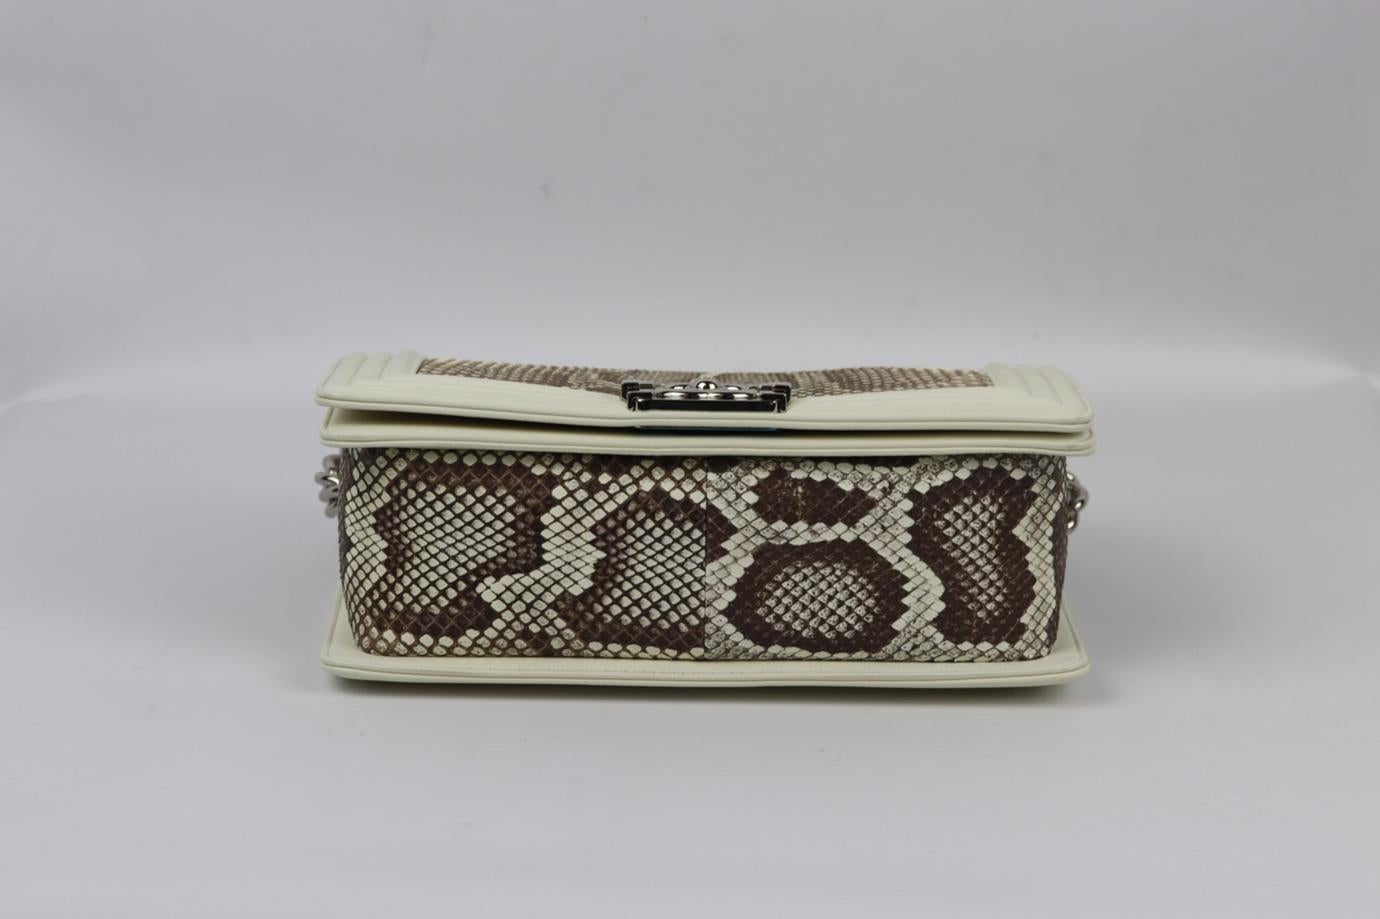 Chanel 2014 Boy Medium Python And Leather Shoulder Bag For Sale 2